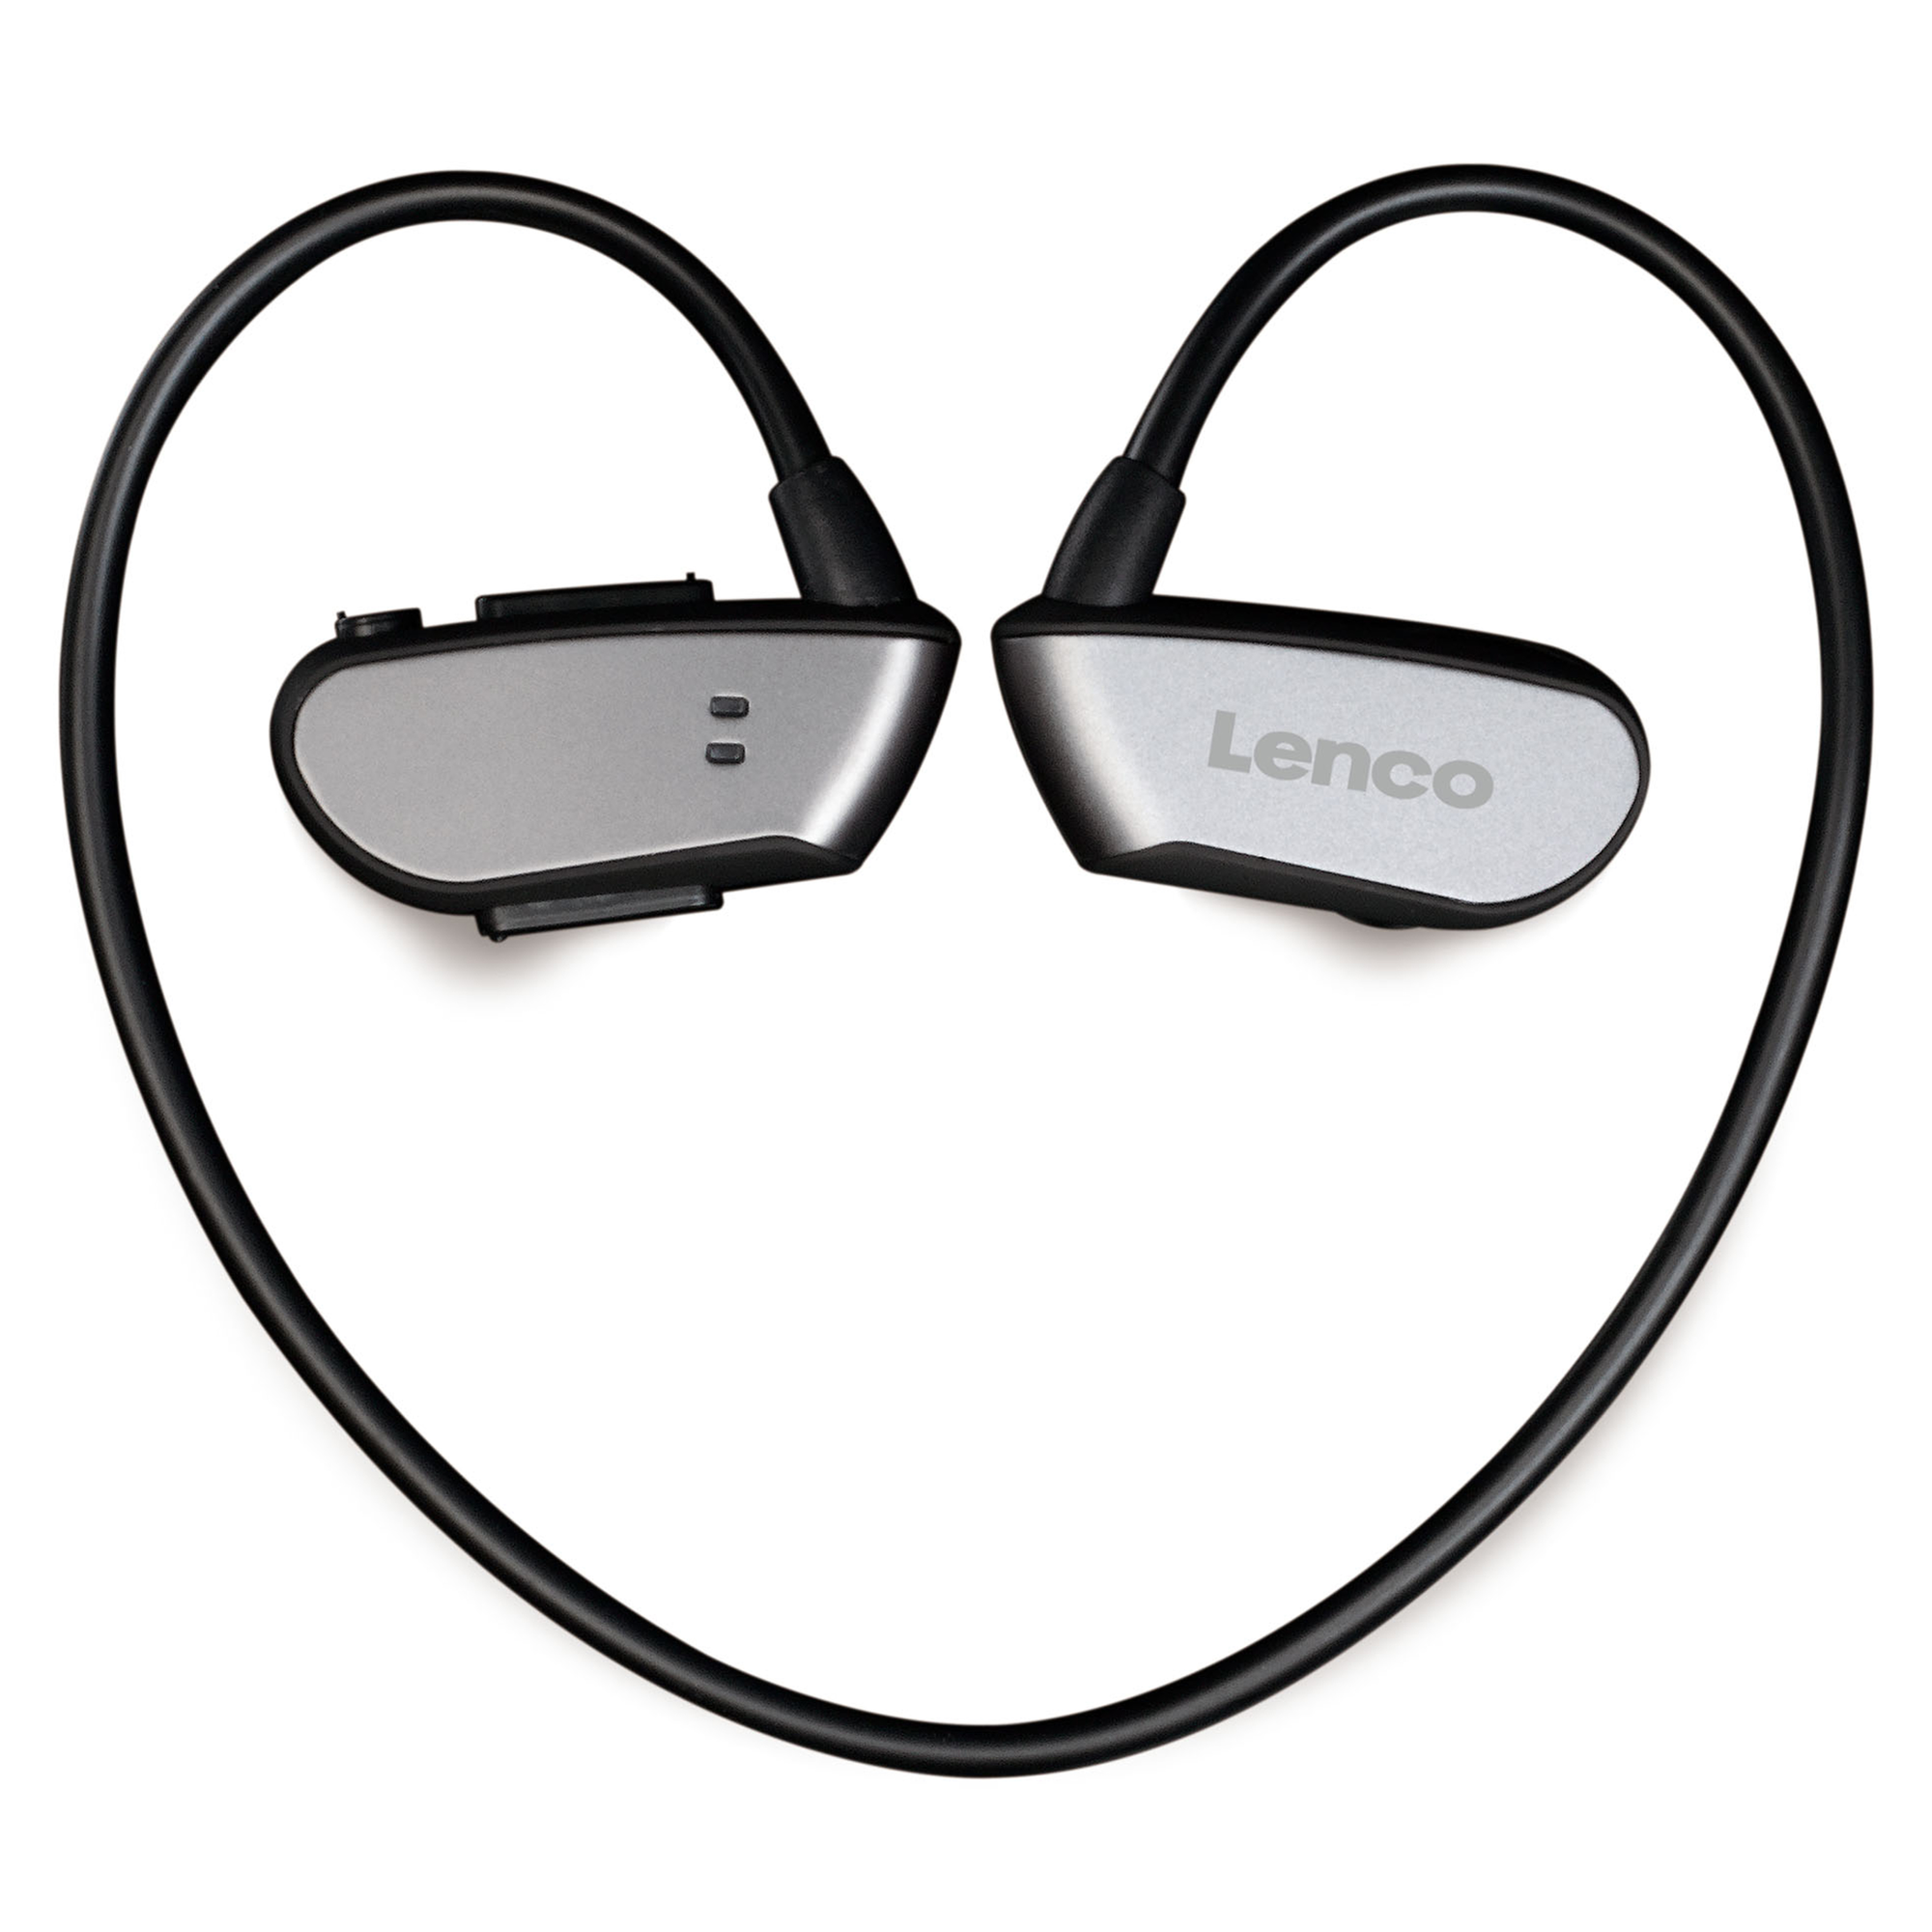 LENCO BTX-860BK, Bluetooth Bluetooth Schwarz-Grau In-ear Headphone